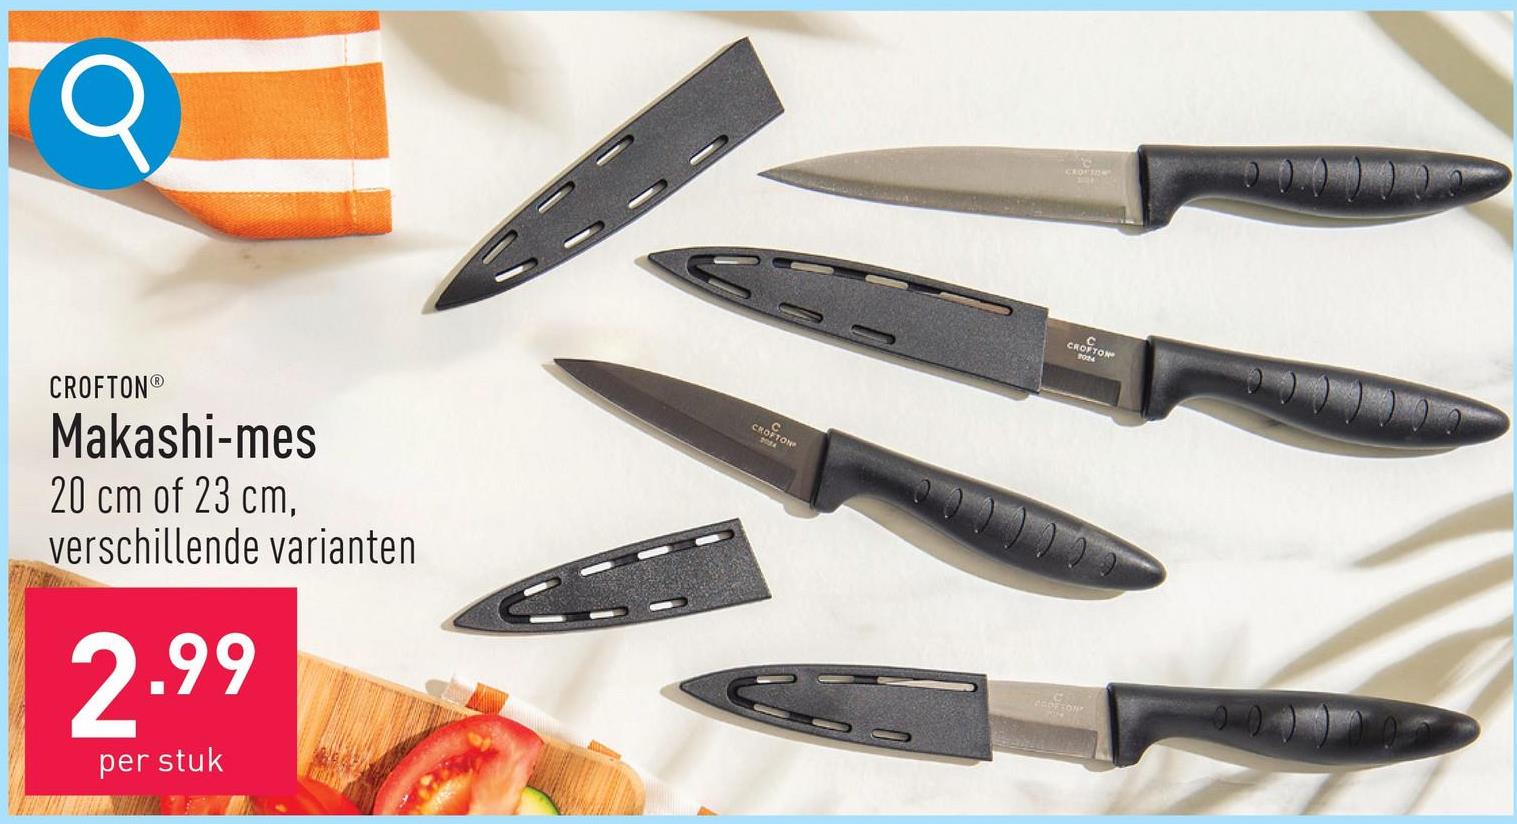 Makashi-mes lemmet uit roestvrij staal, titanium antikleeflaag, praktische beschermkap, keuze uit een mes van 20 cm en een mes van 23 cm, keuze uit verschillende varianten